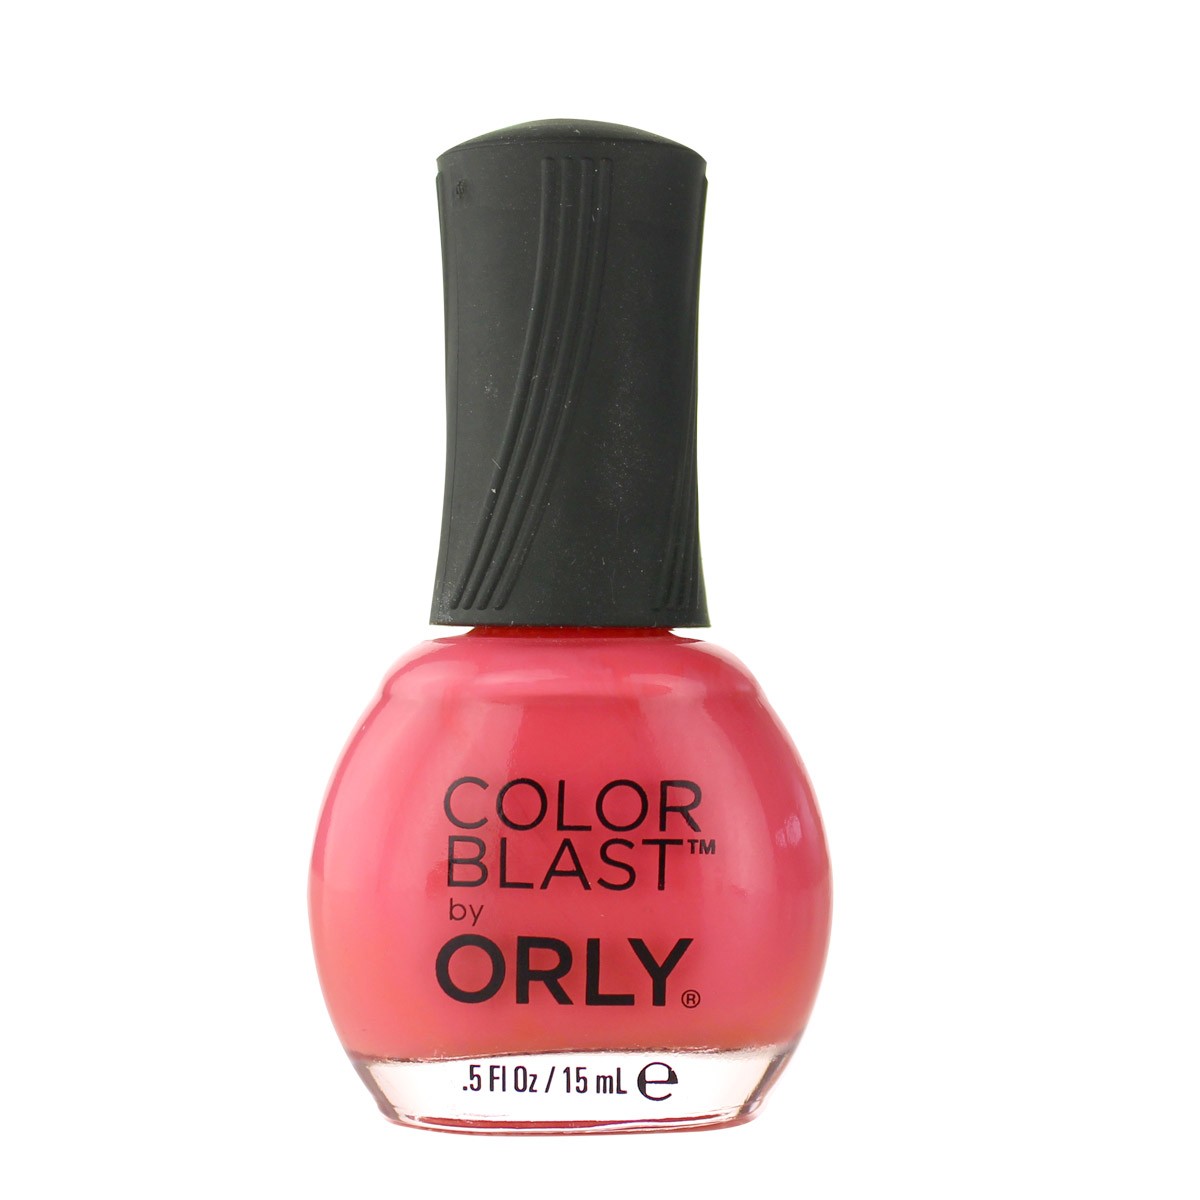 Orly Orly Color Blast Lak Na Nehty 15 Ml Odstin Cherry Cherry Blossom Highlife Cz